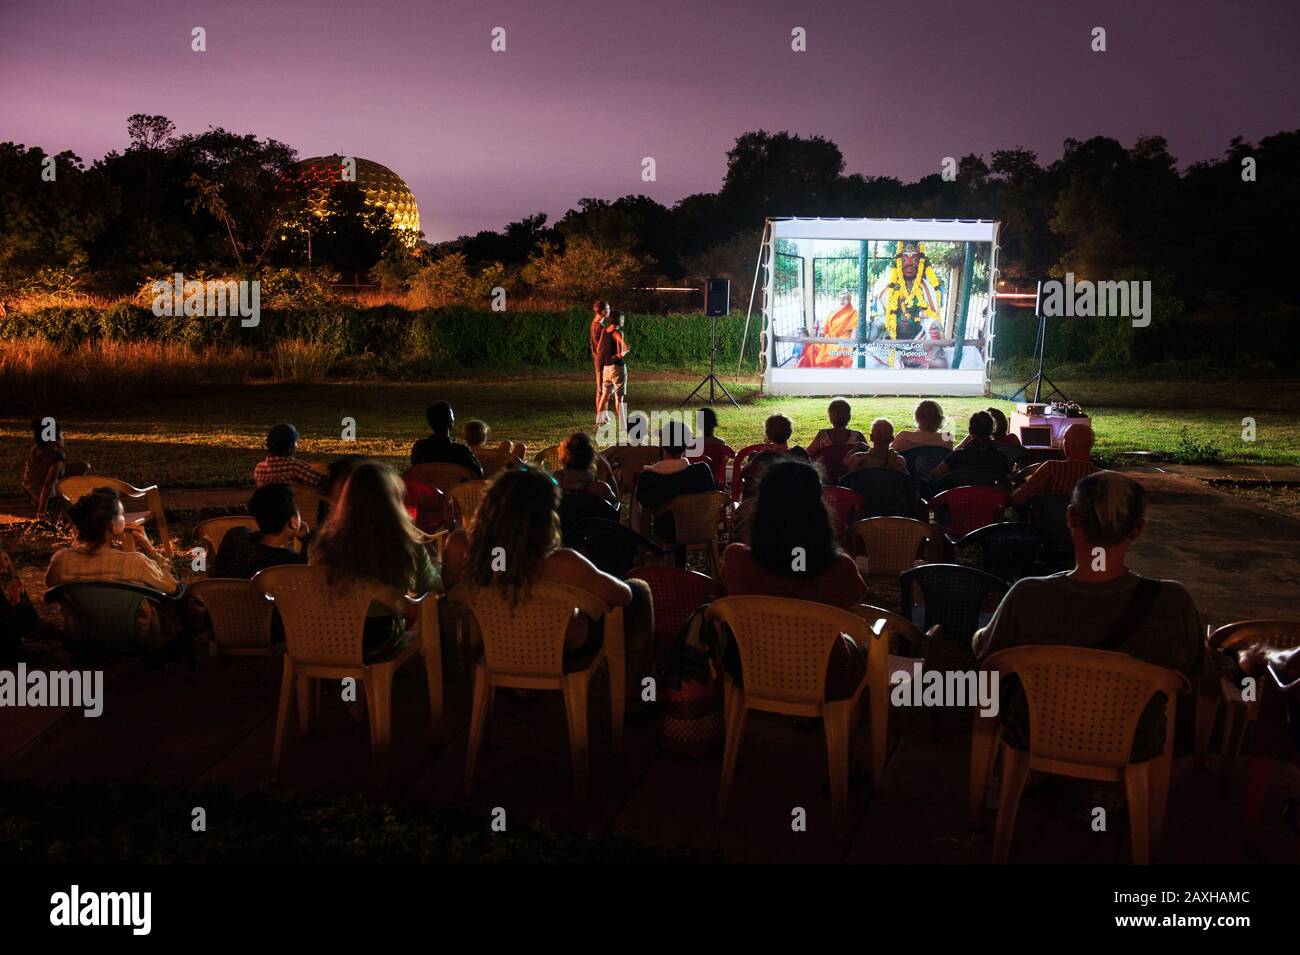 Auroville, INDIA - Auroville Film Festival 2015. Proyección de películas sobre la Unidad humana en el espacio al aire libre entre el Ayuntamiento y los jardines de Matrimandir. Foto de stock